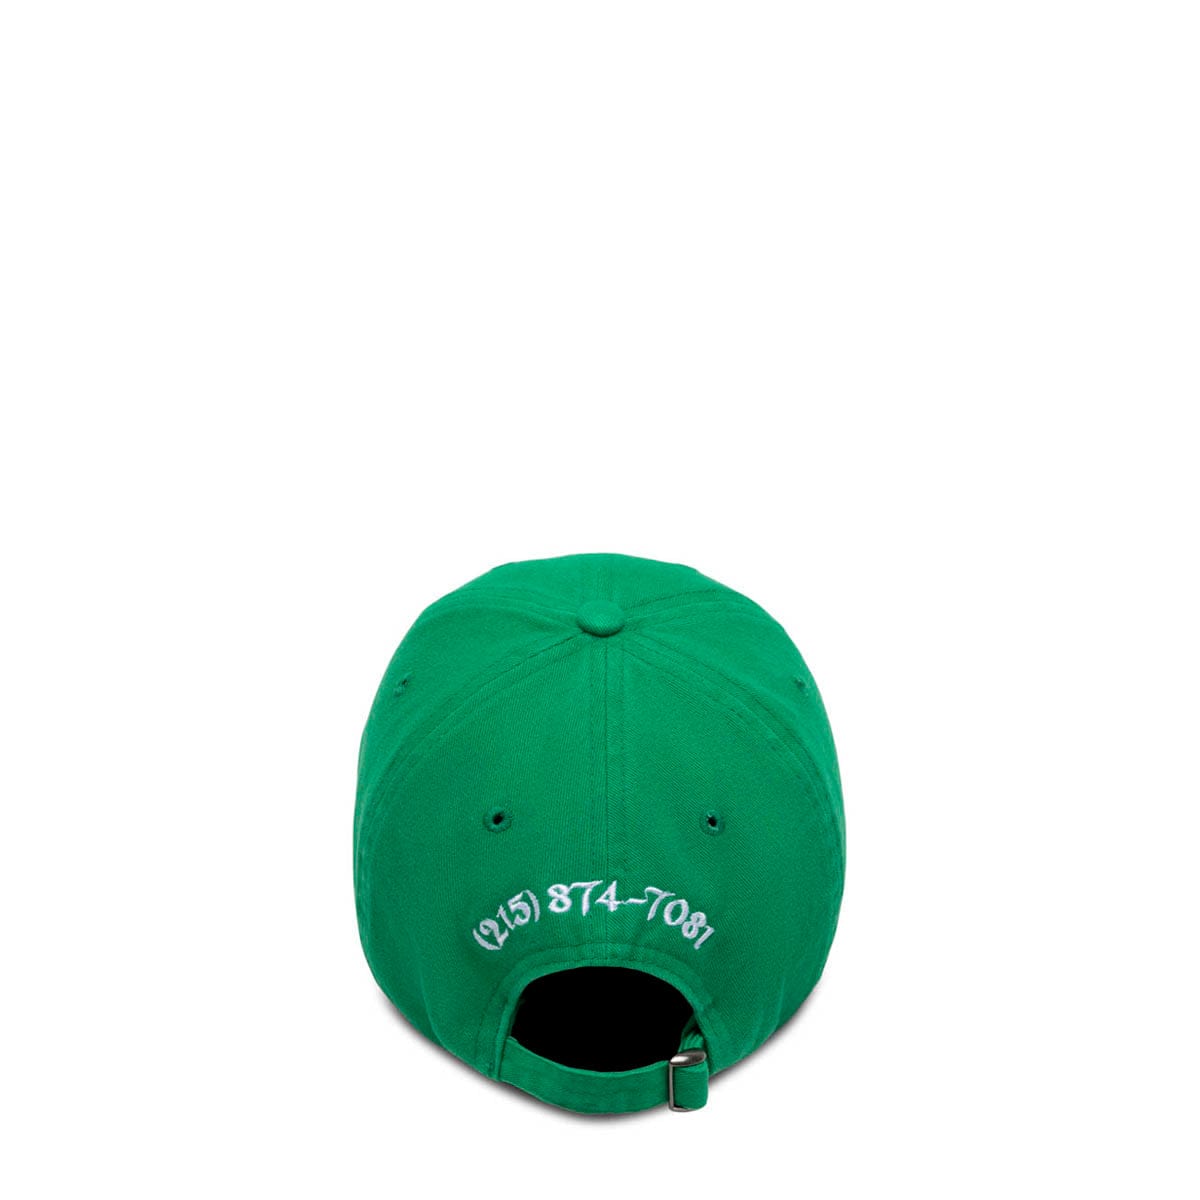 ALLCAPSTUDIO Headwear KELLY GREEN / O/S BEHOLD! CAP